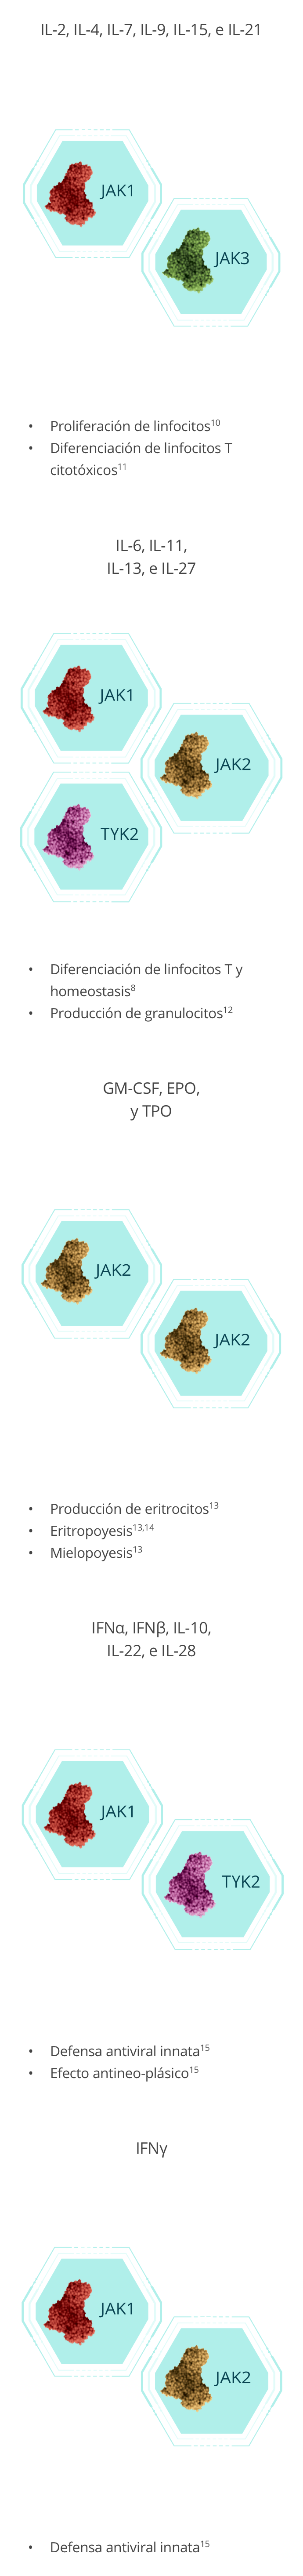 Principales citoquinas de la vía JAK-STAT8